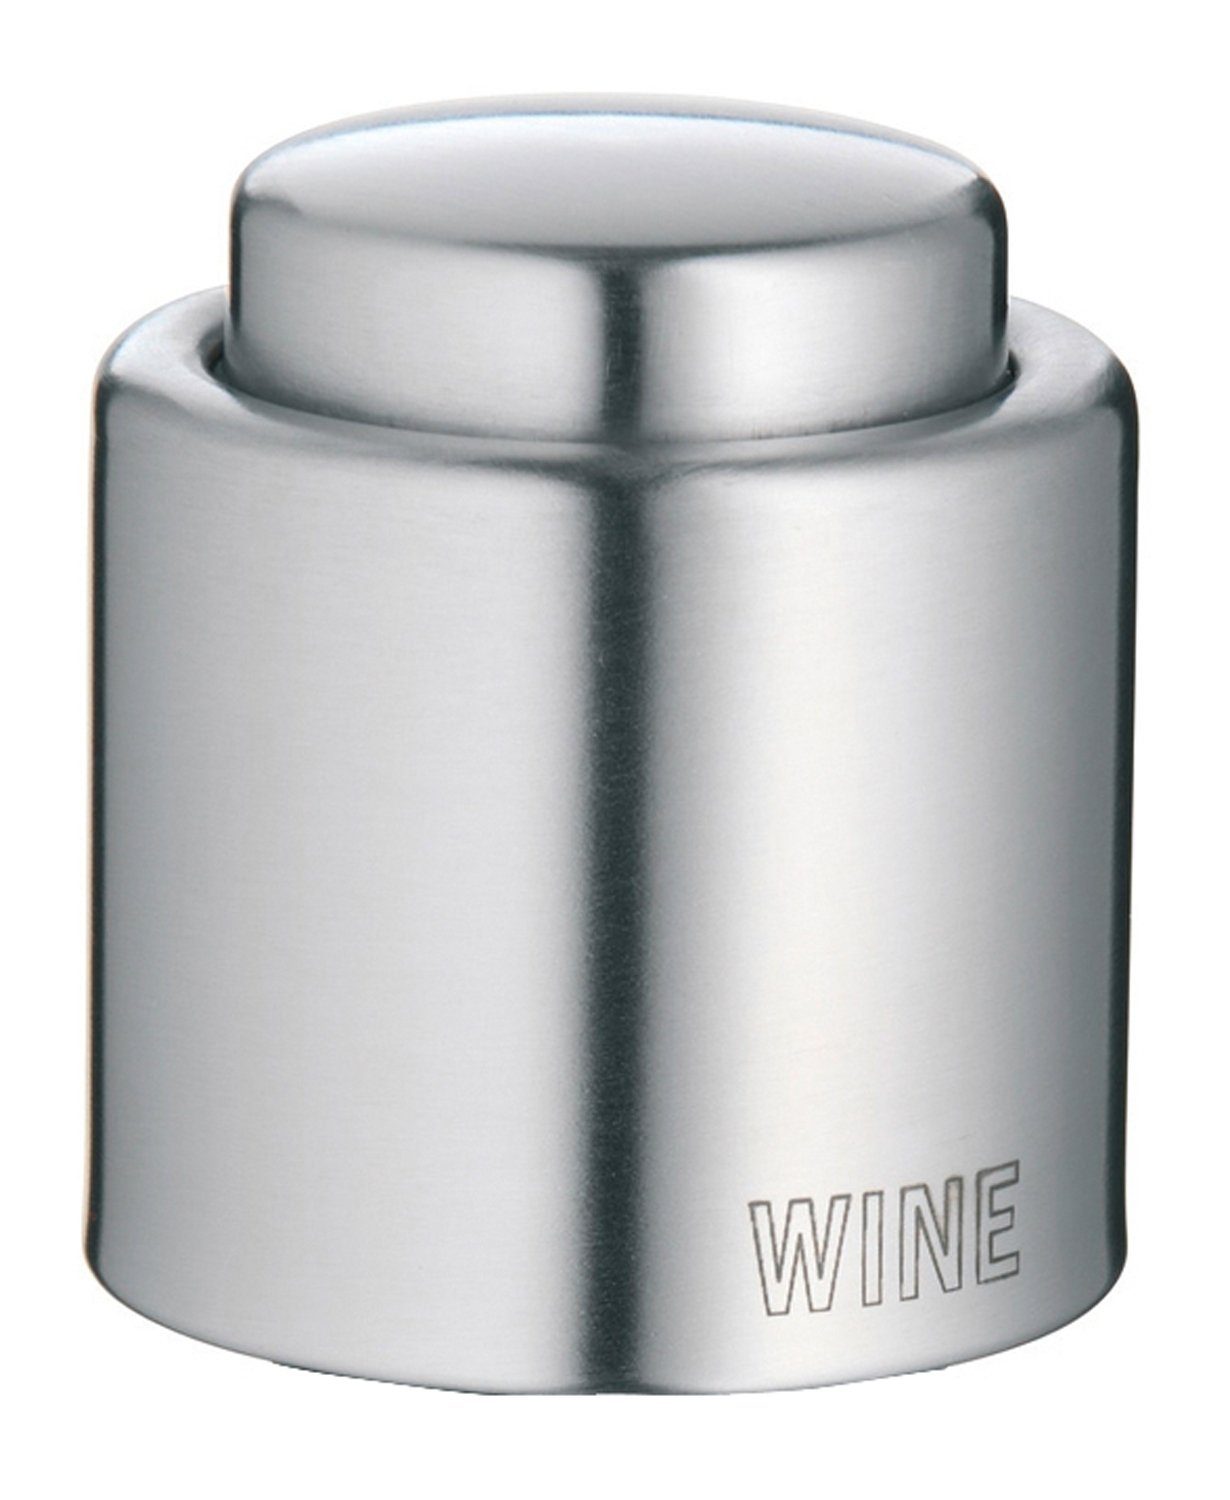 WMF Flaschenverschluss CLEVER & MORE, Ø 4,3 cm, Cromargan Edelstahl 18/10, Auslaufsicher, Luftdicht, für Weinflaschen